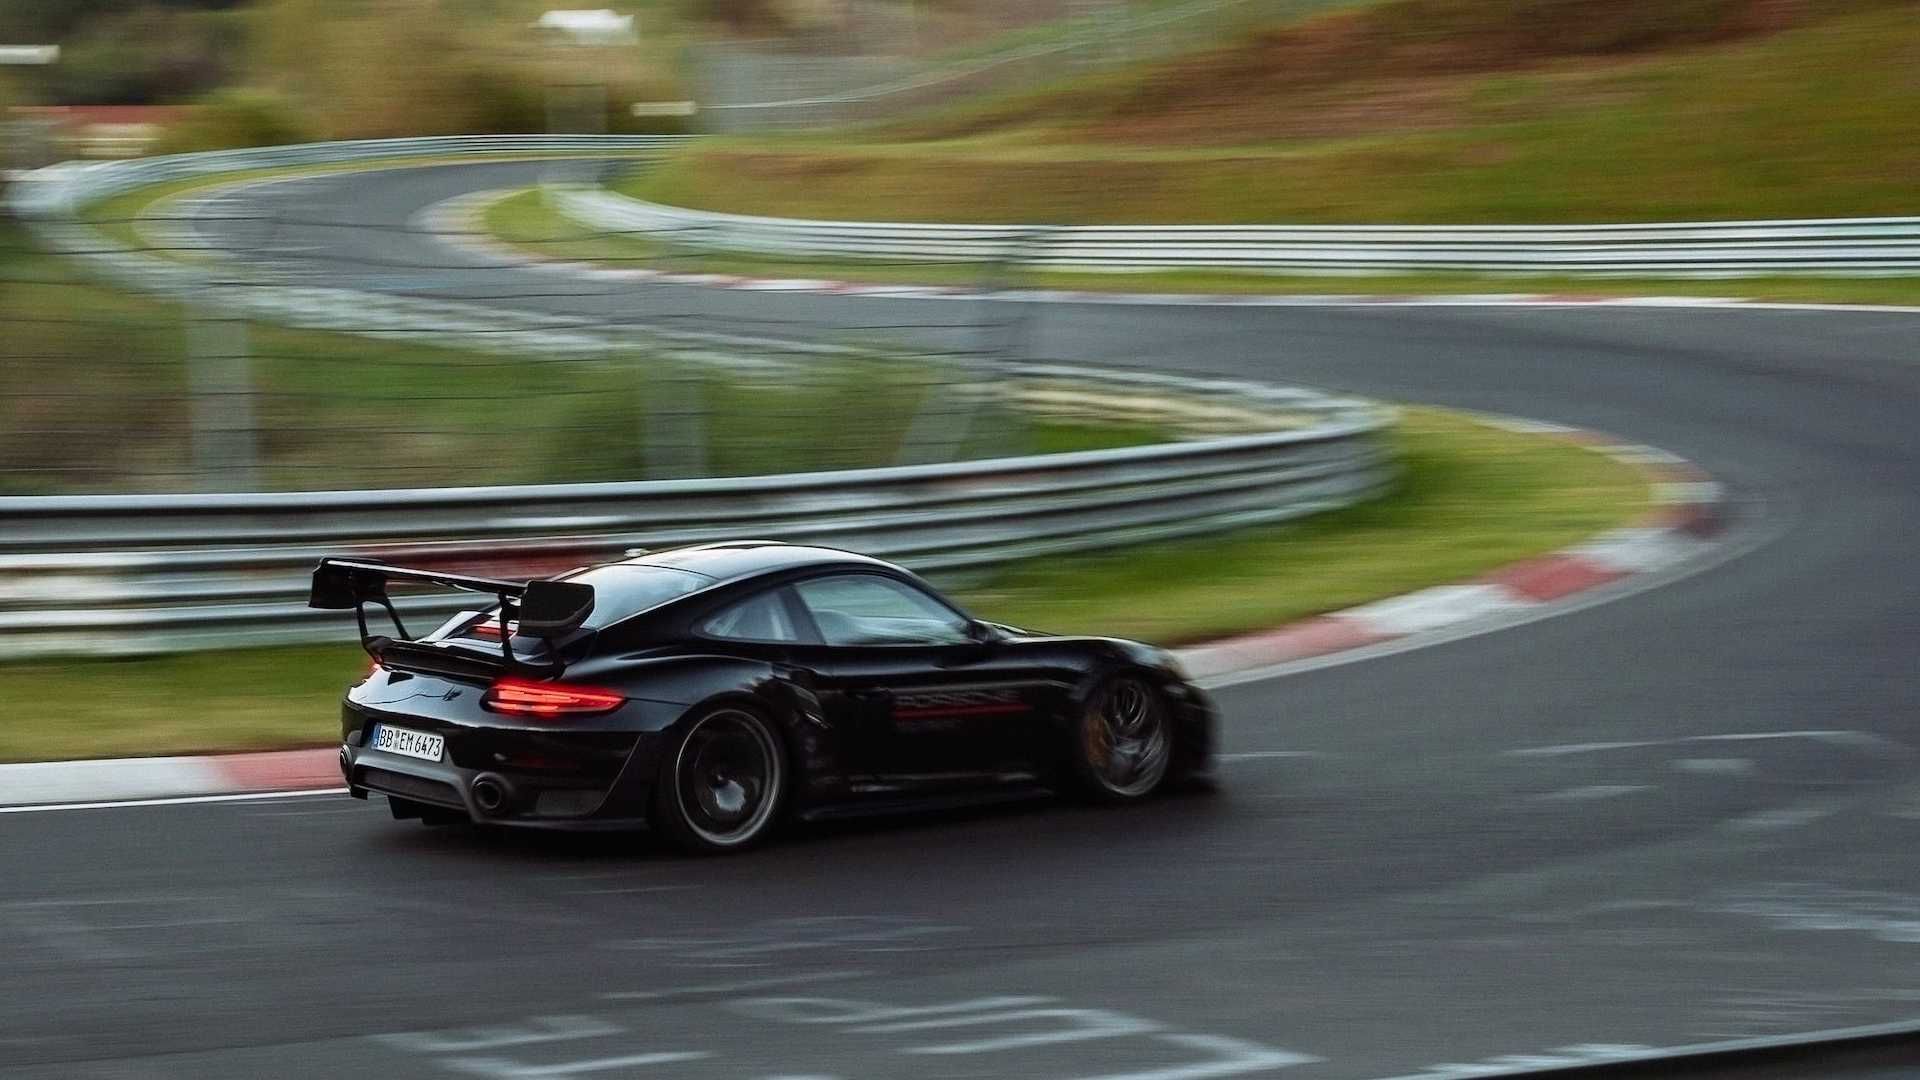 نمای جانبی پورشه 911 جی تی 2 آر اس / Porsche 911 GT2 RS تیونینگ Manthey Racing